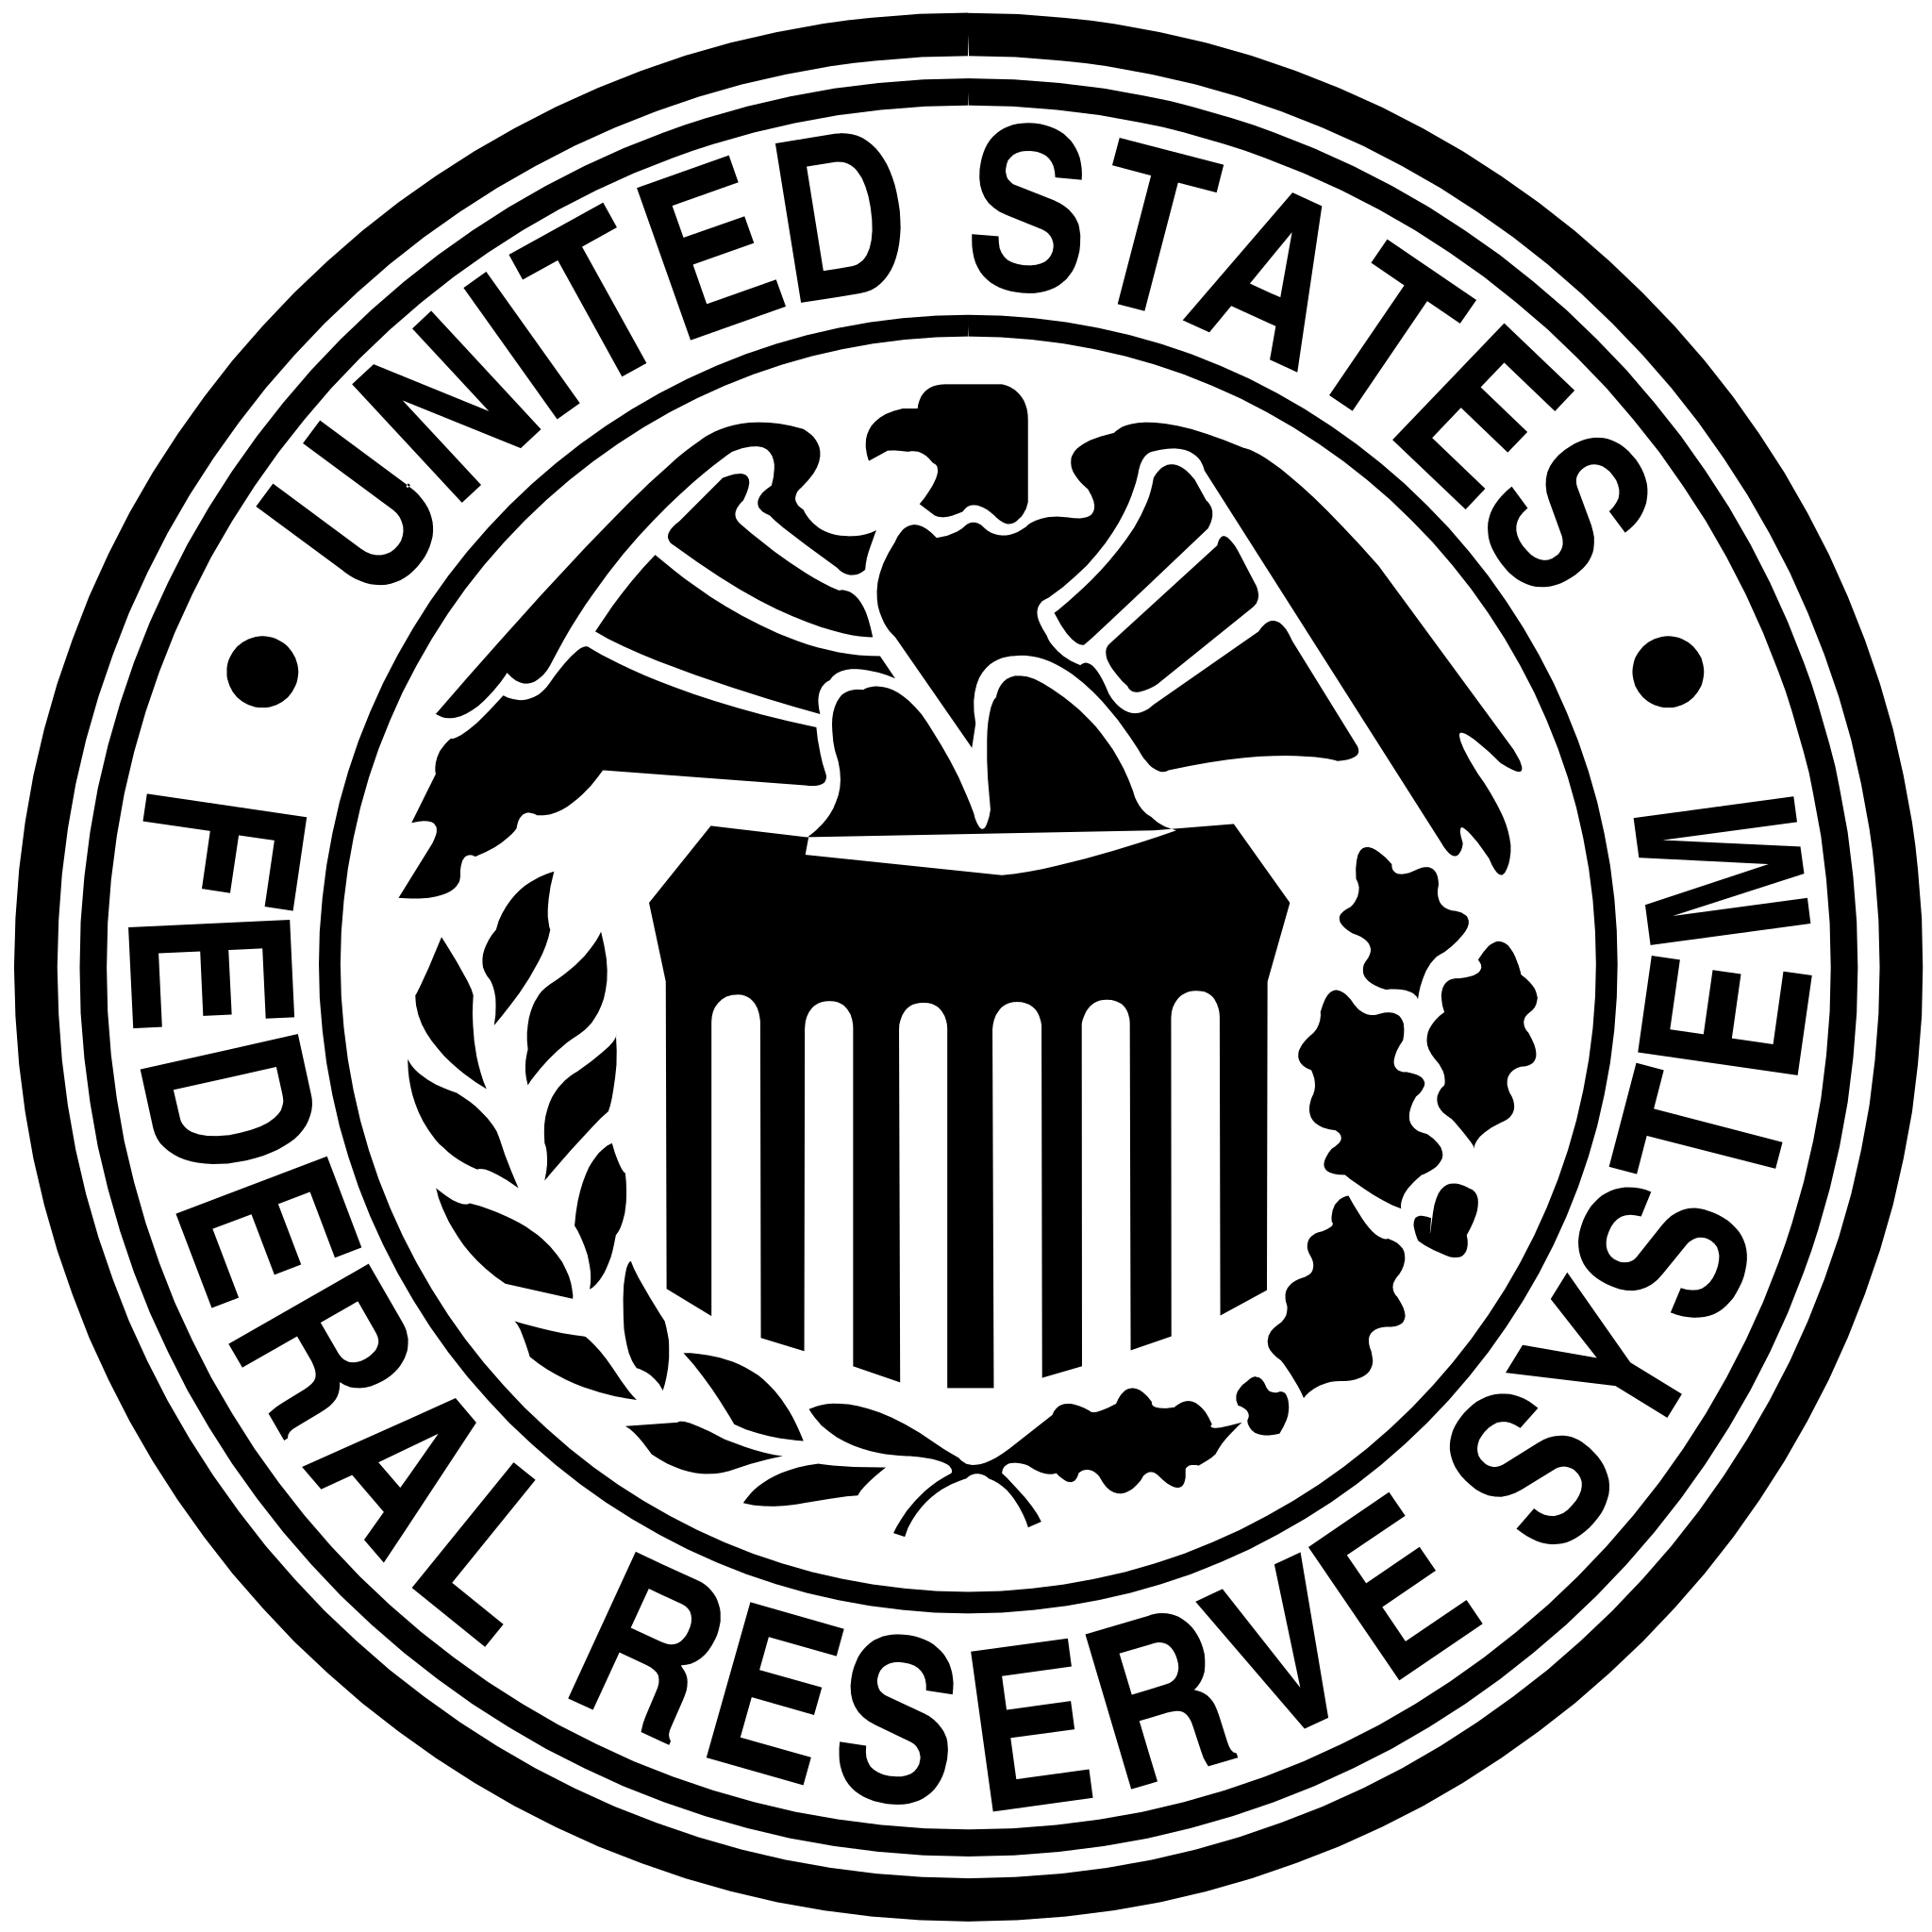 U.S. Federal Reserve System (Bank Supervision)